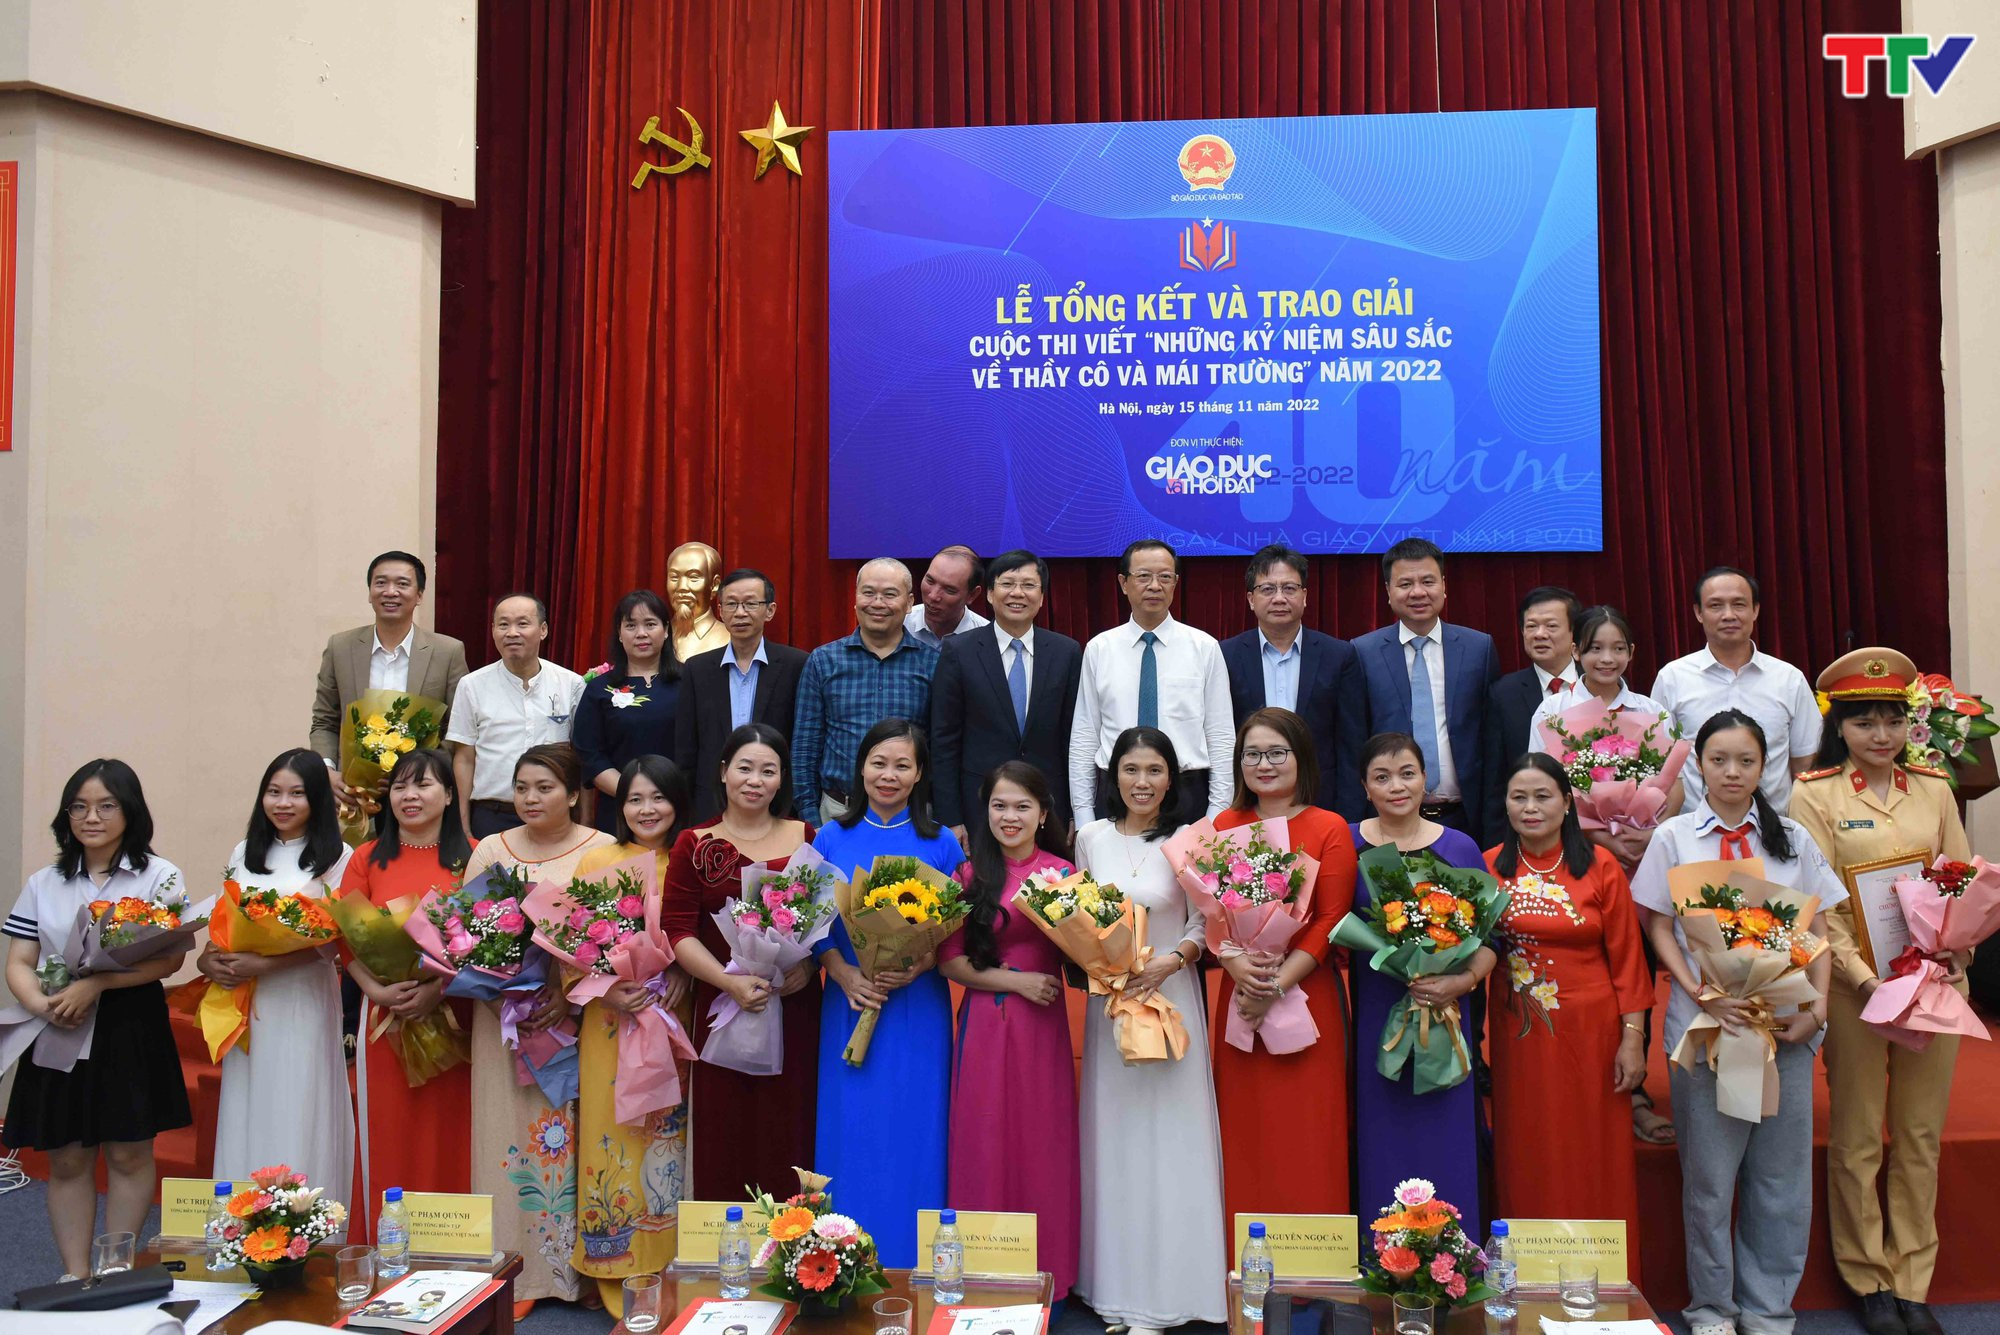 Đài PT-TH Thanh Hóa có tác phẩm đạt giải Cuộc thi viết Những kỷ niệm sâu sắc về thầy cô và mái trường năm 2022 - Ảnh 1.